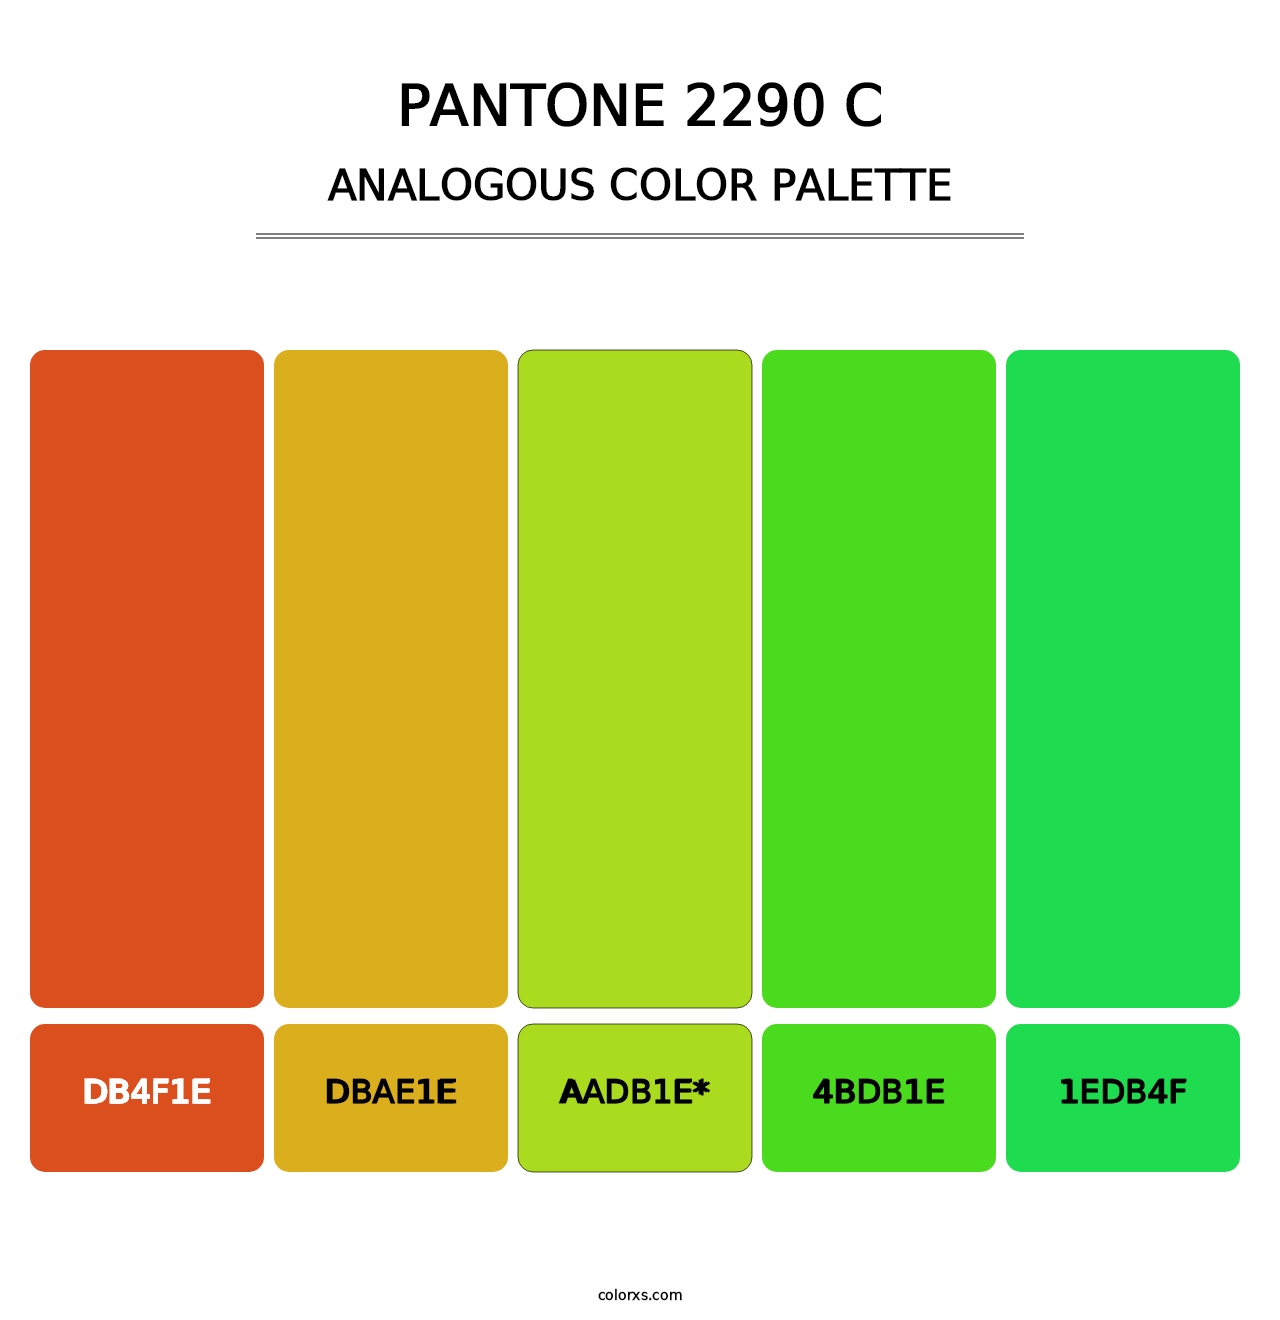 PANTONE 2290 C - Analogous Color Palette